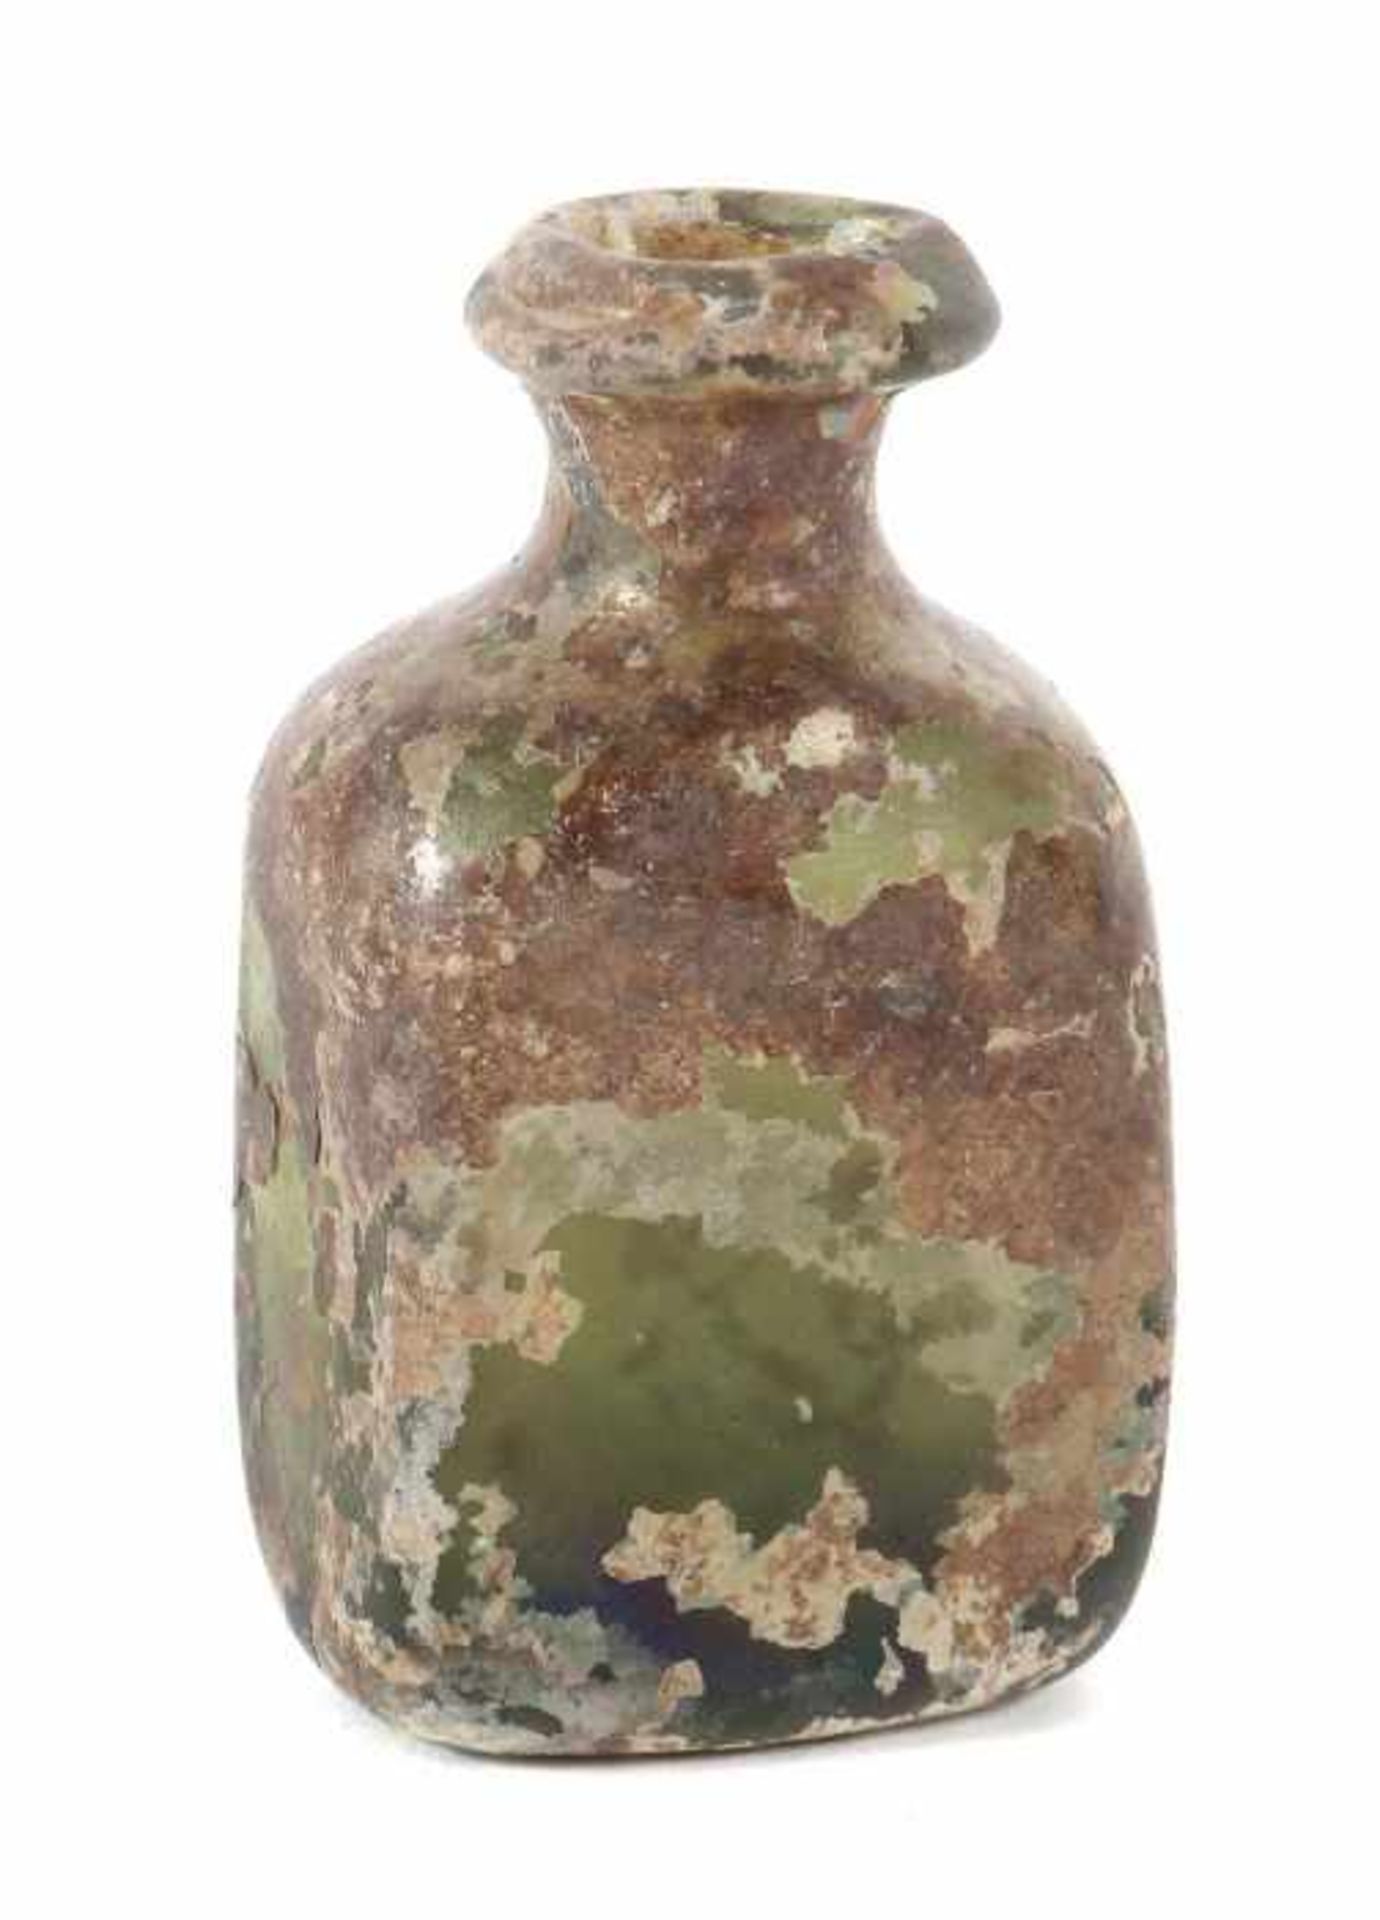 Flakon Wohl 1. Jh. n. Chr., römisch, leicht grünstichiges Glas mit Aufschmelzungen, irisierend, in - Bild 2 aus 2